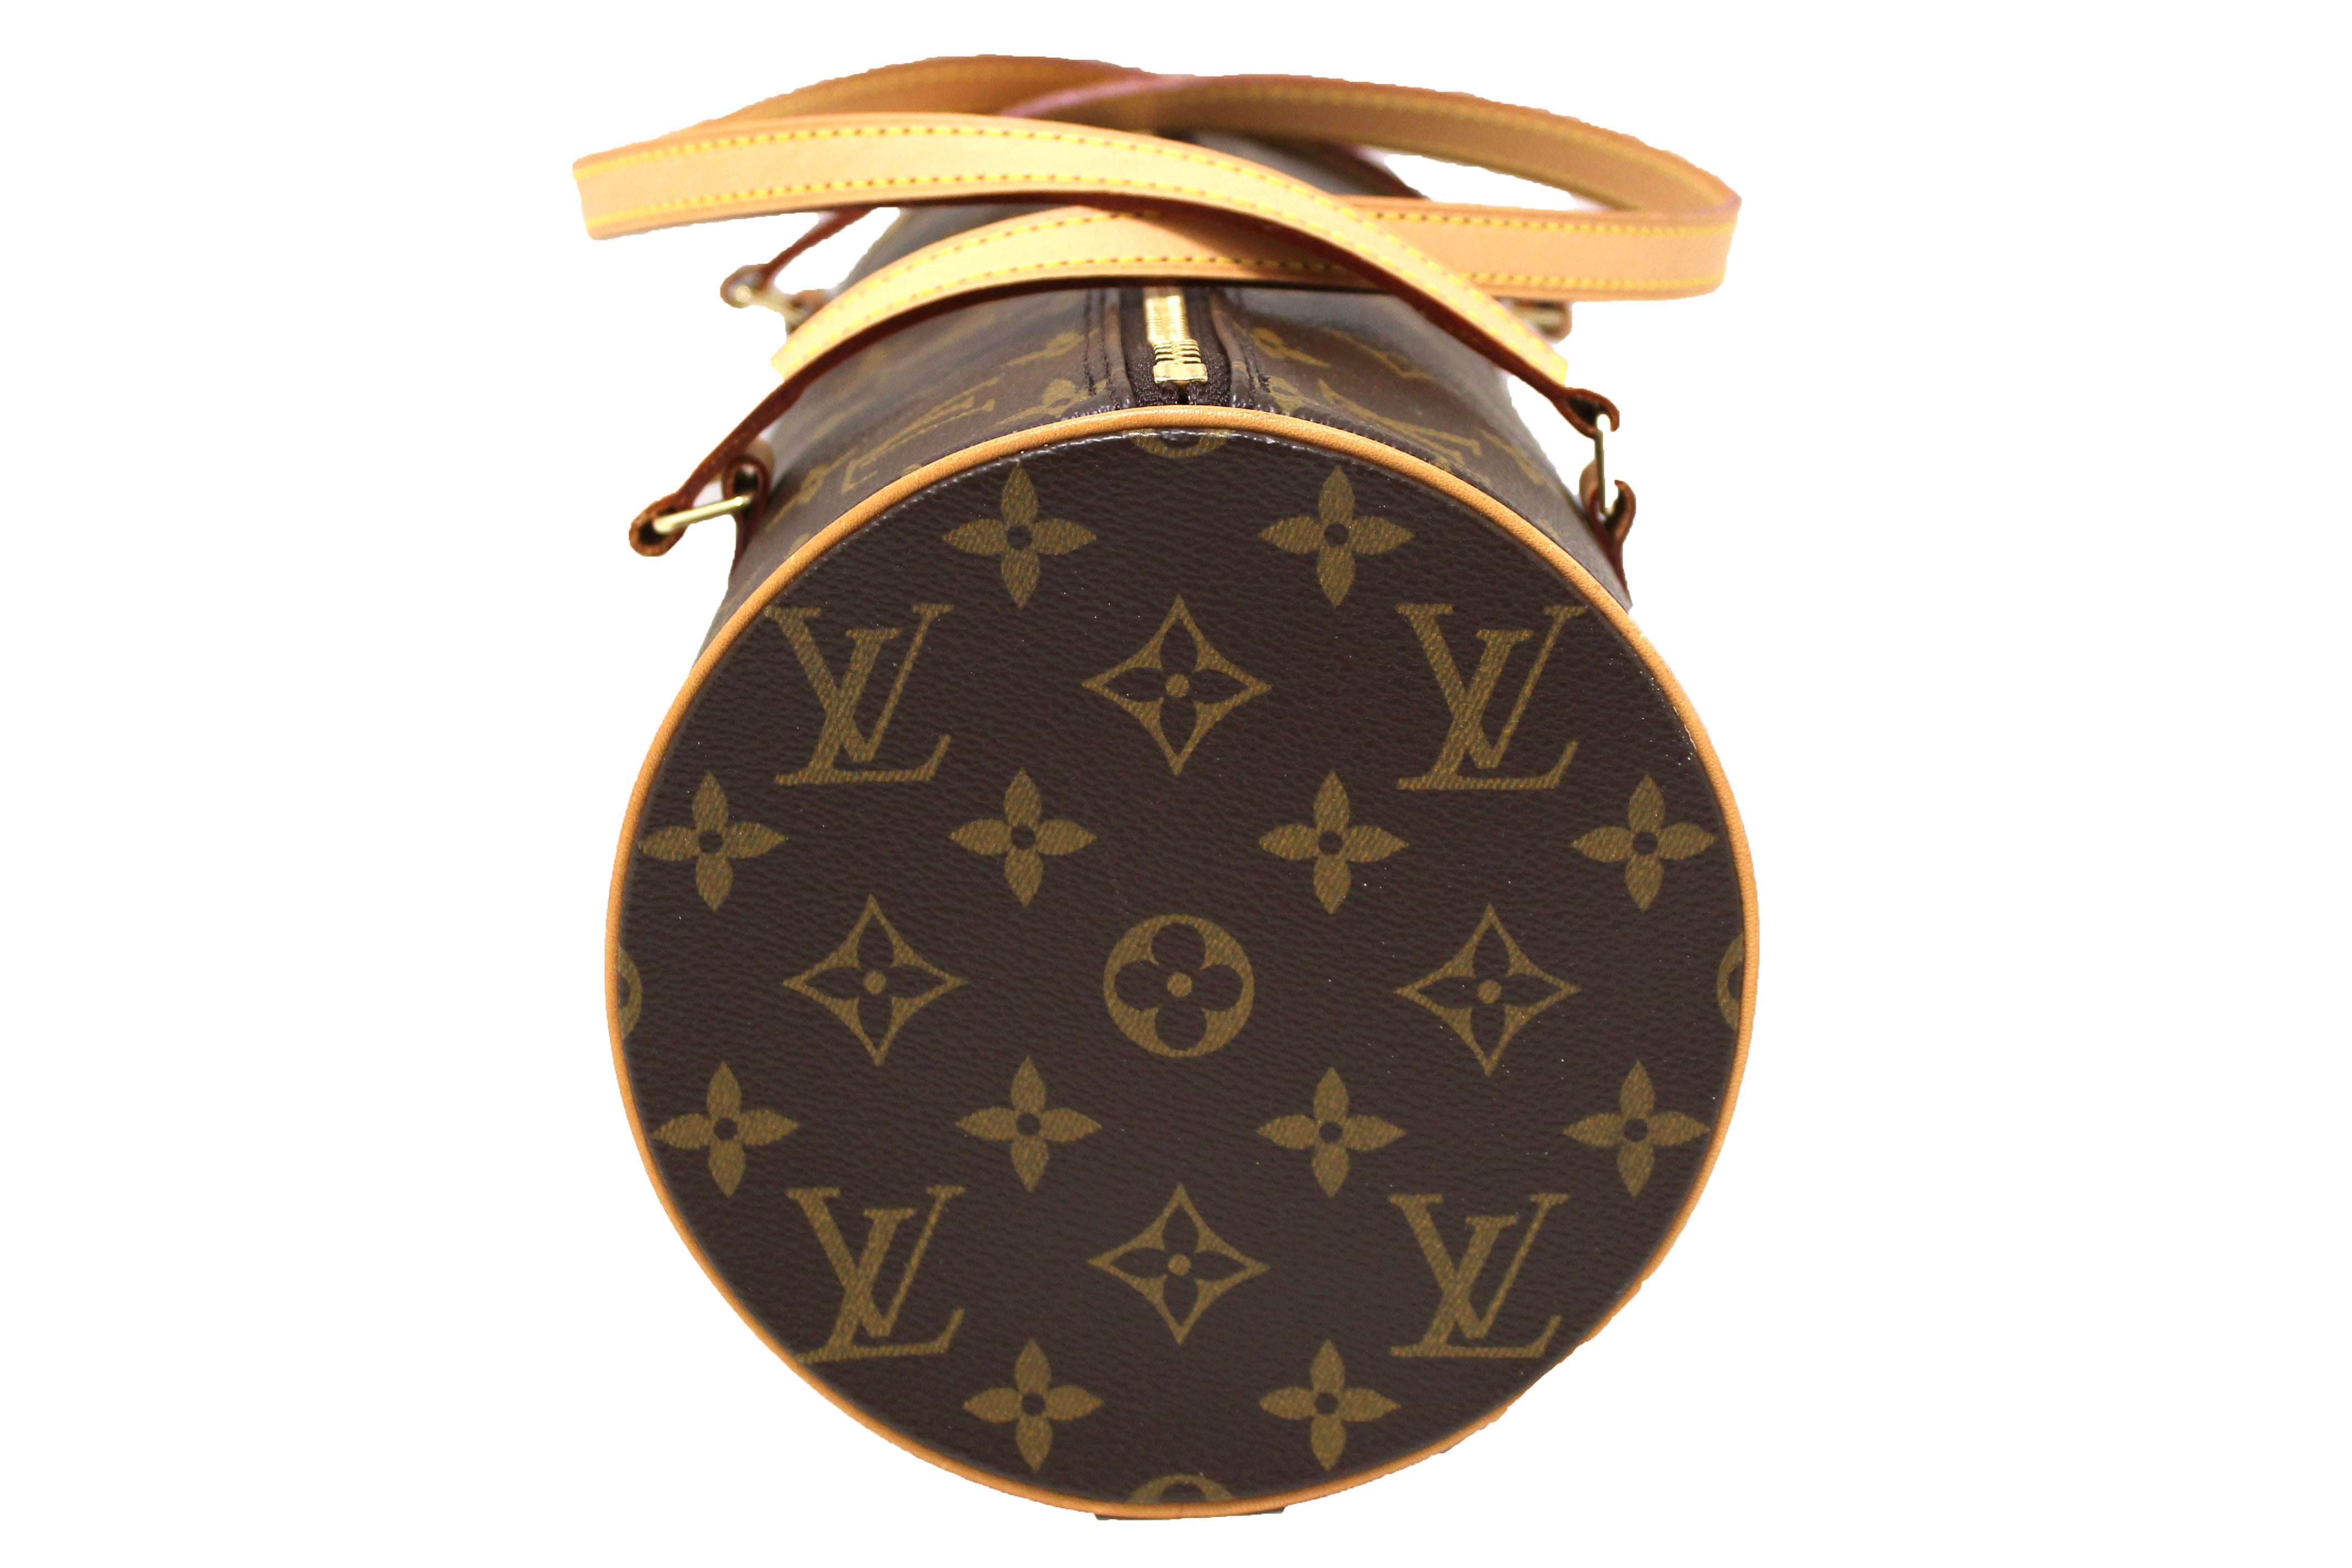 Authentic Vintage Louis Vuitton Monogram Papillon 30 Handbag With